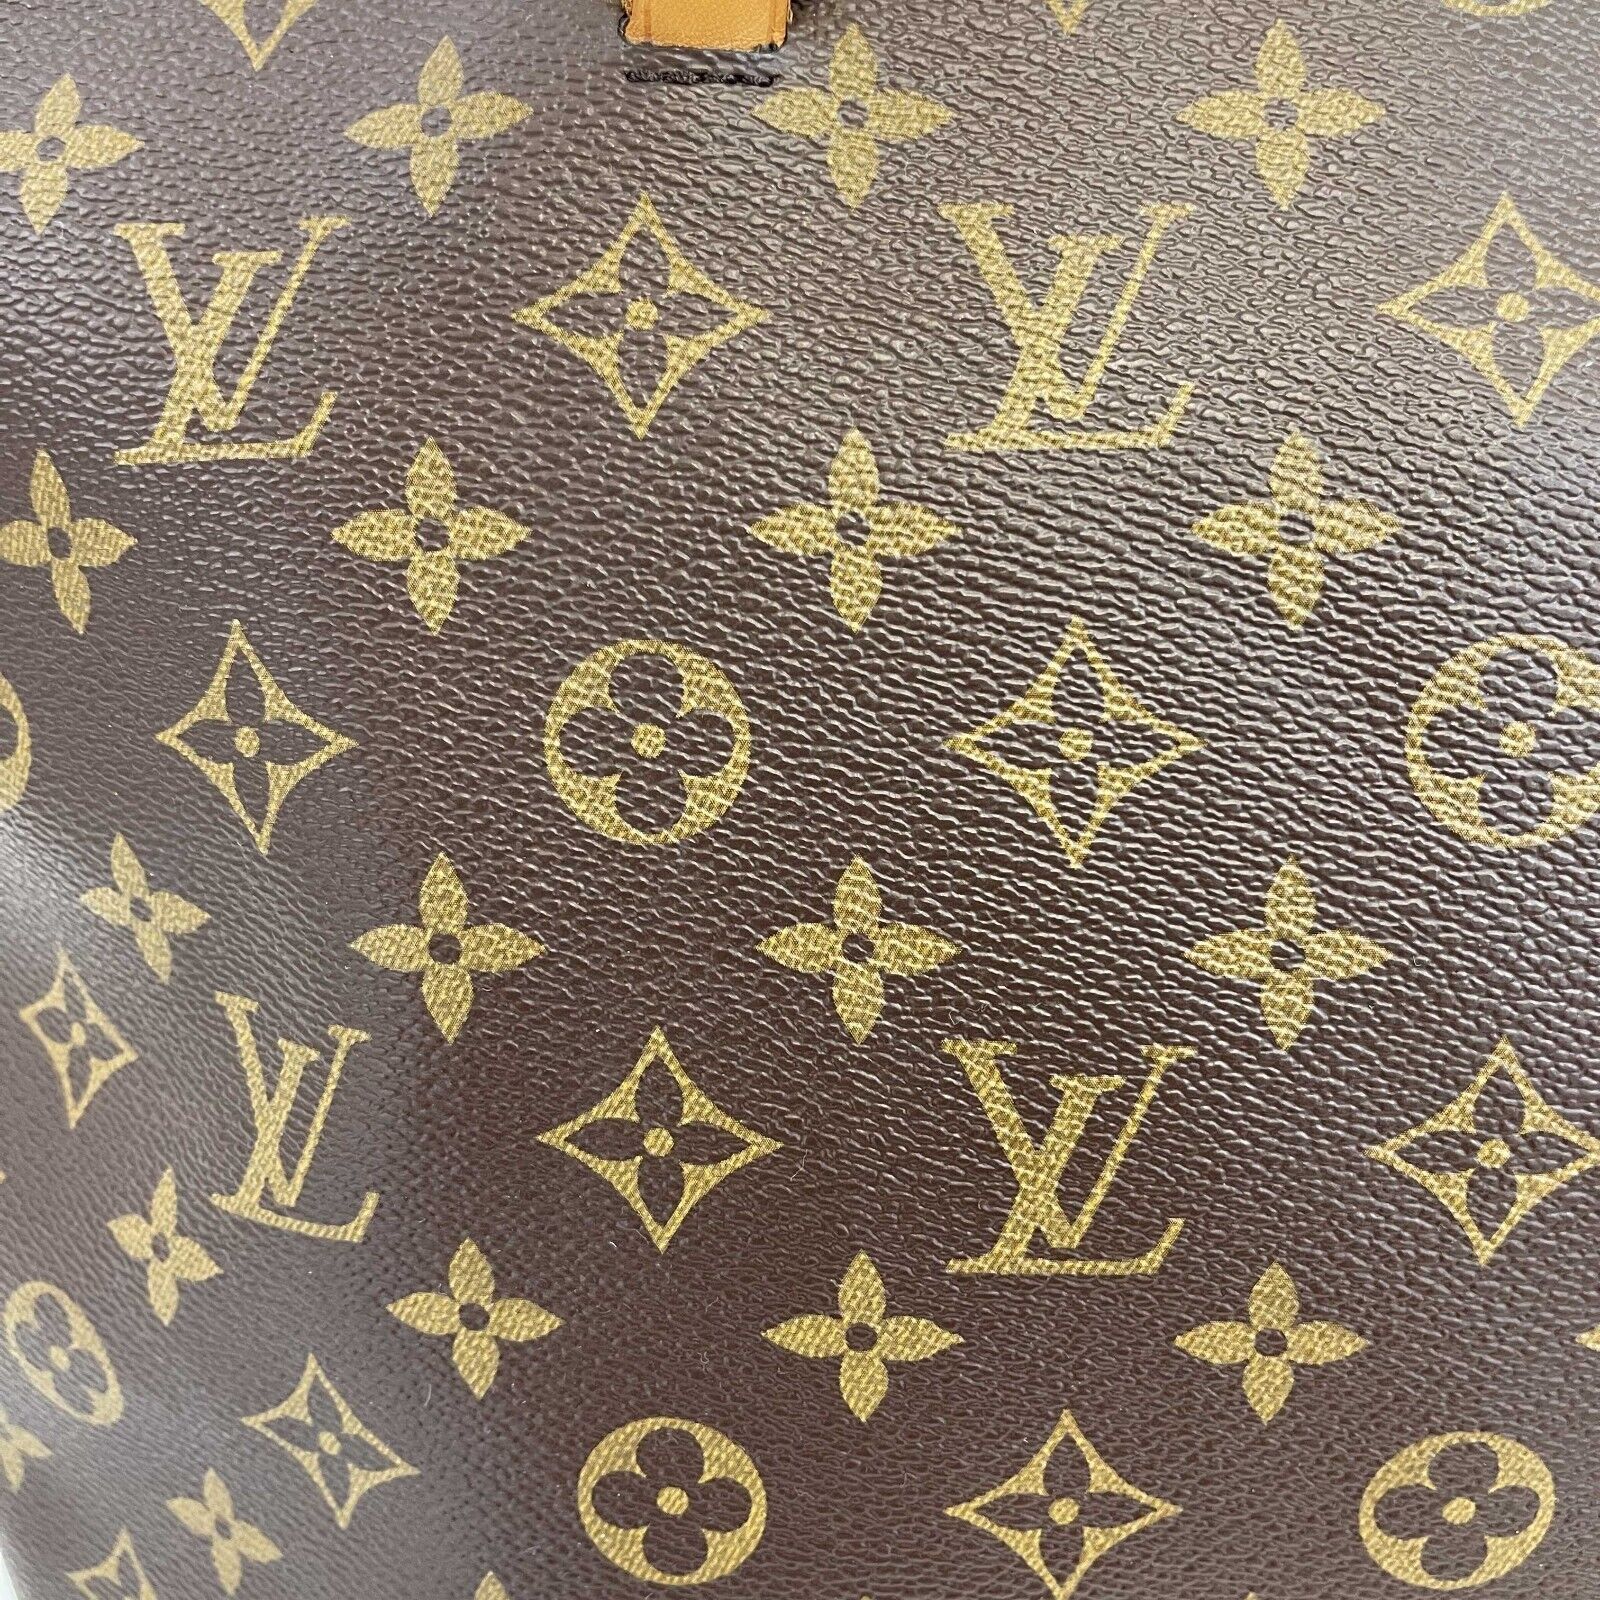 Louis Vuitton - Monogram Canvas Lena mm Tote - Brown Shoulder Bag